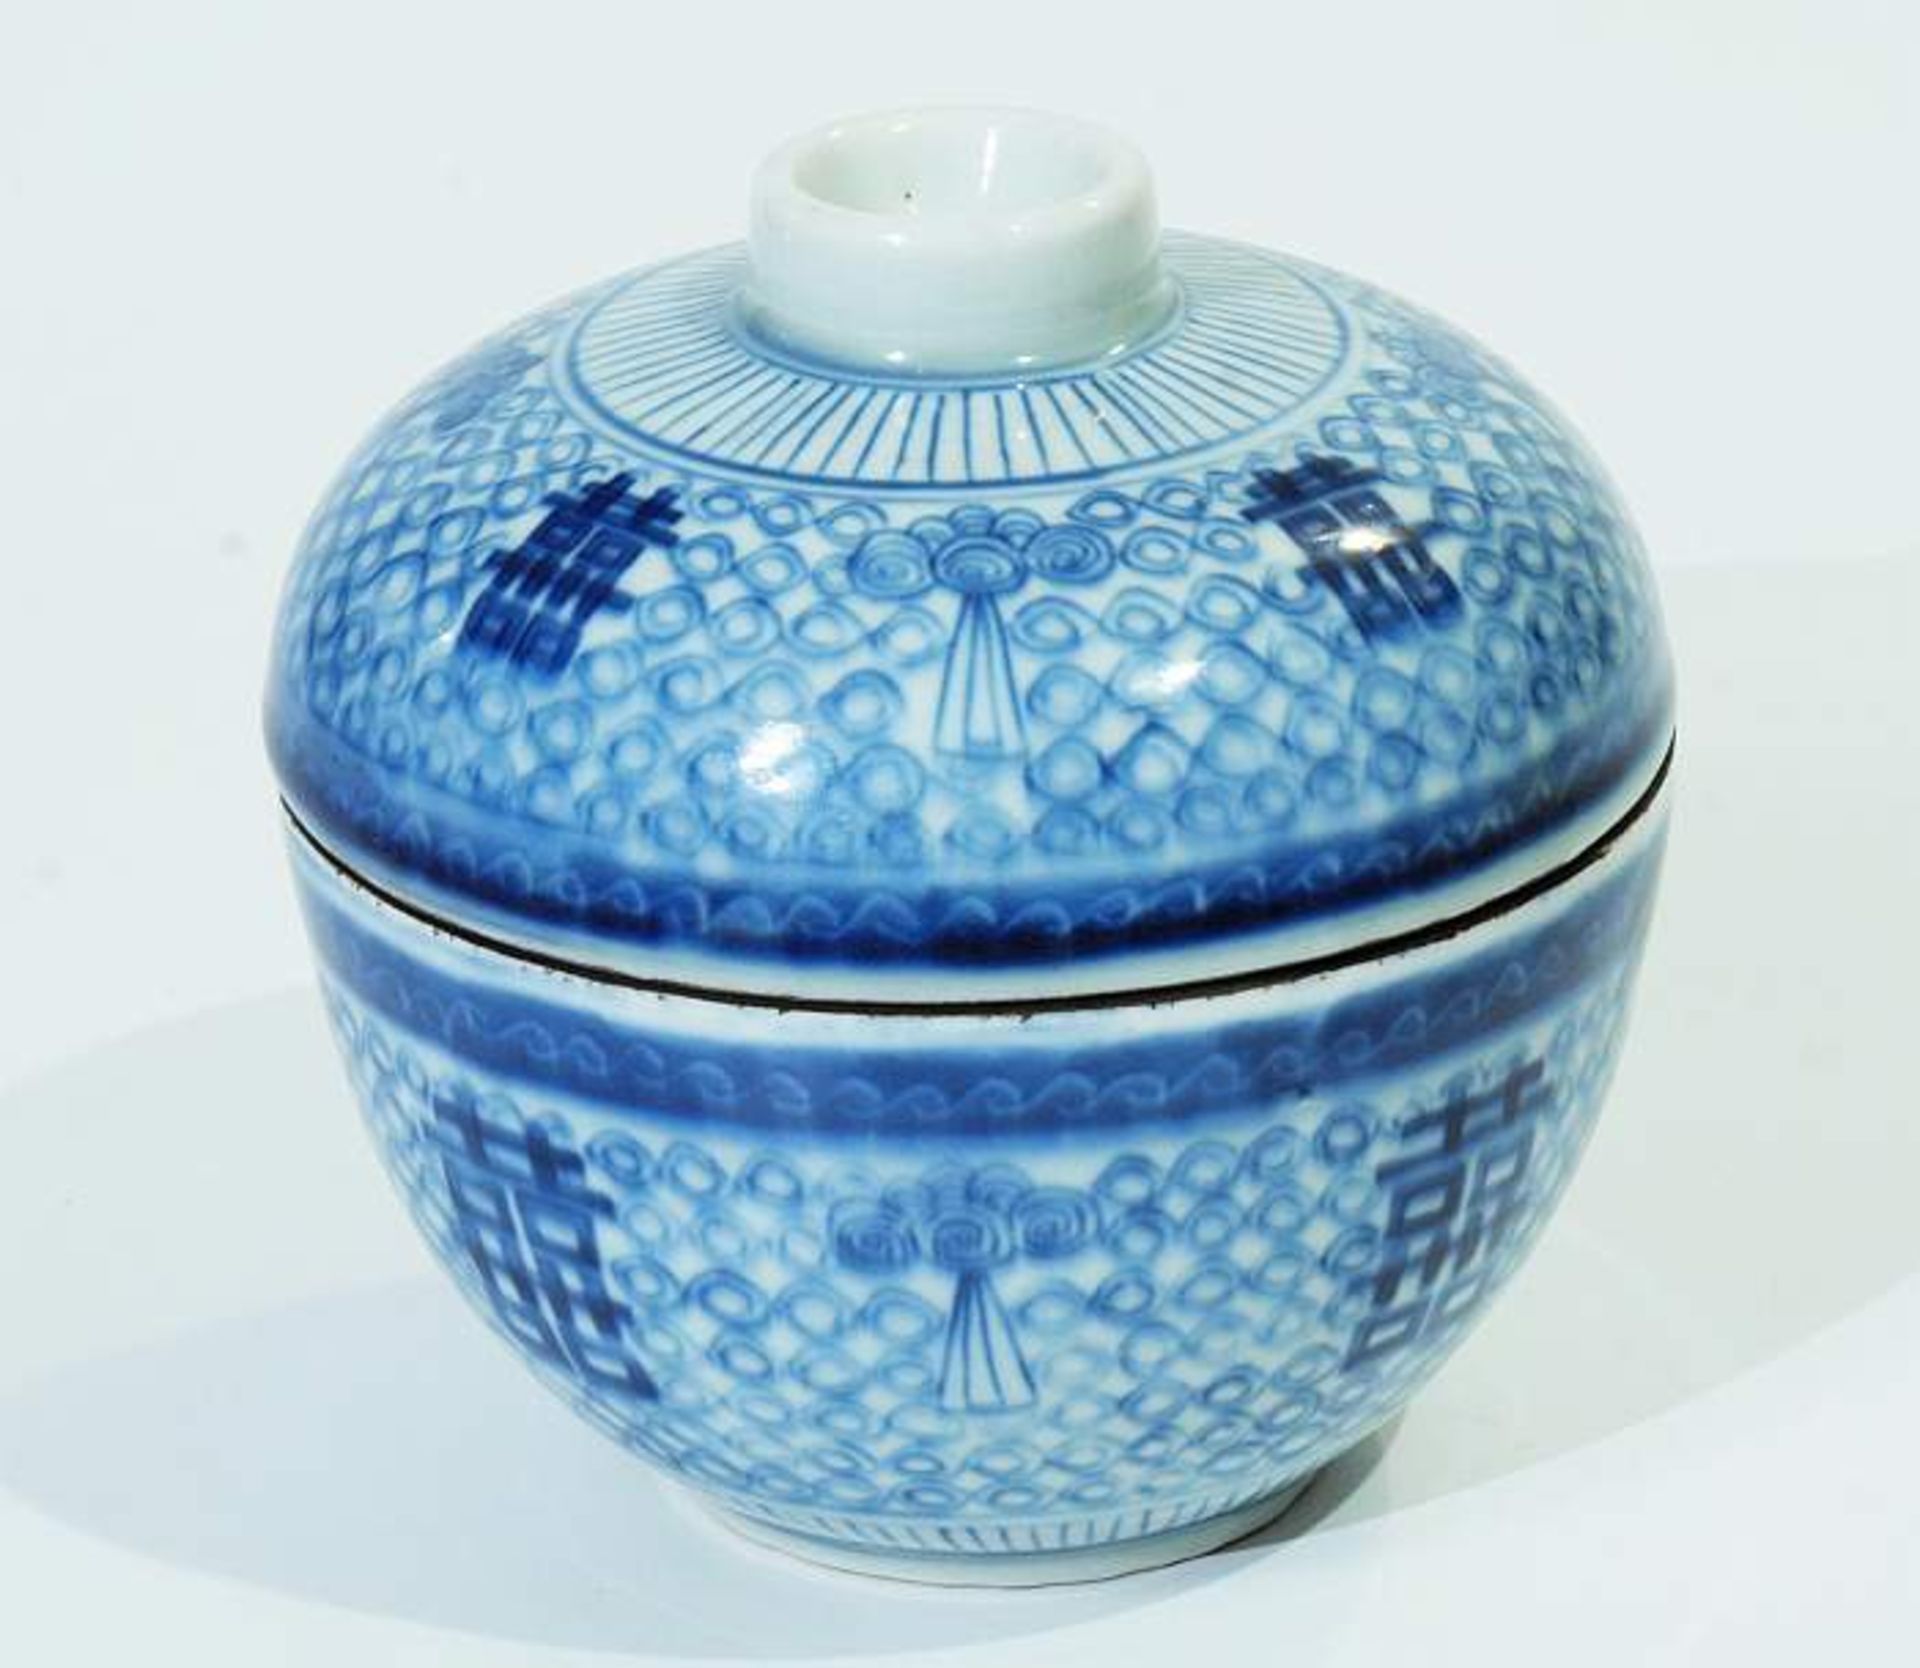 Reistopf mit Deckel. Reistopf mit Deckel. 19. Jahrhundert. Blau-weiß Dekor, Wandung mit chinesischen